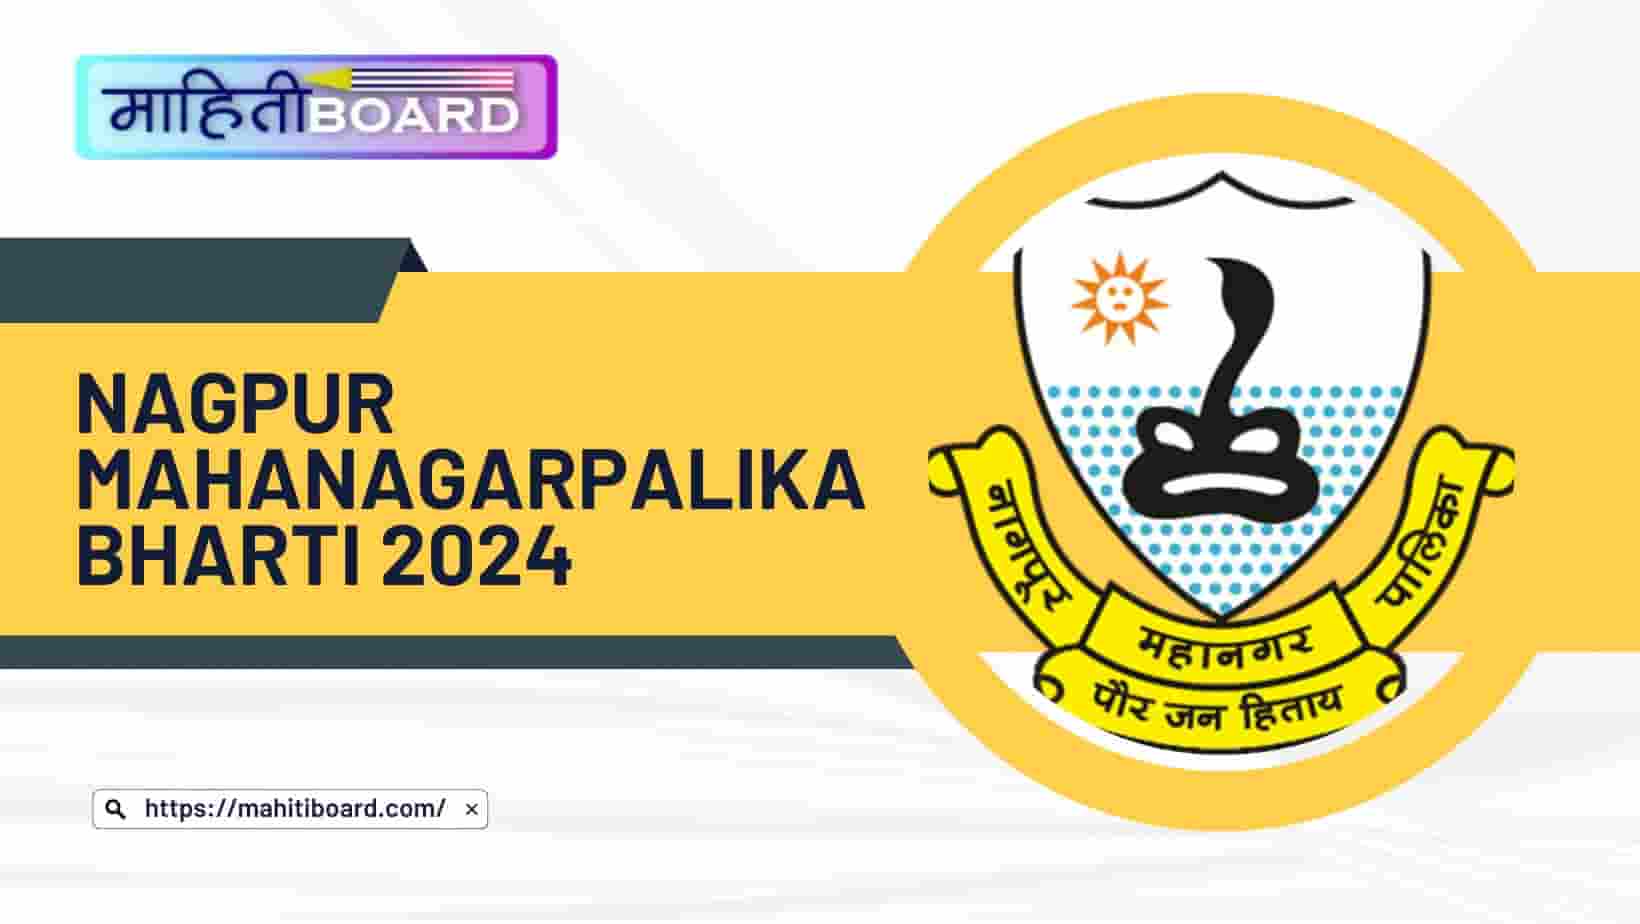 Nagpur Mahanagarpalika Bharti 2024